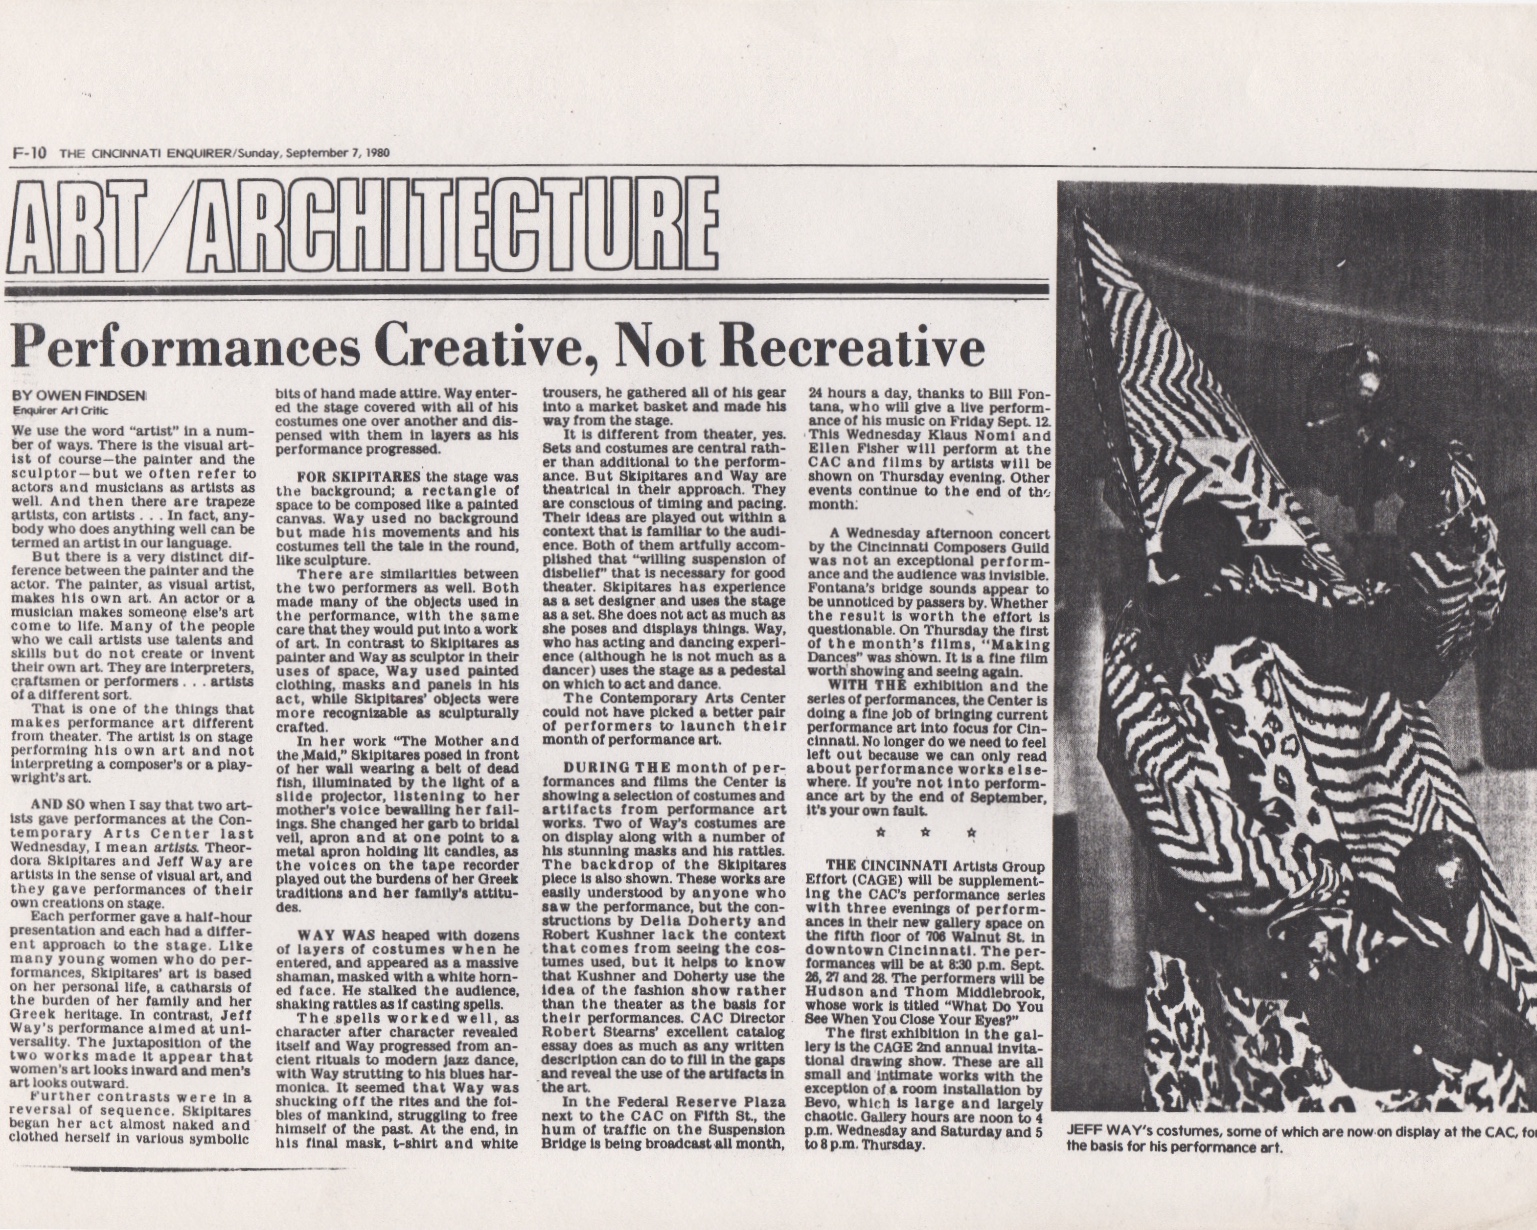 Performances Creative, Not Recreative, Owen Findsen, Cincinnati Enquirer, September 1980